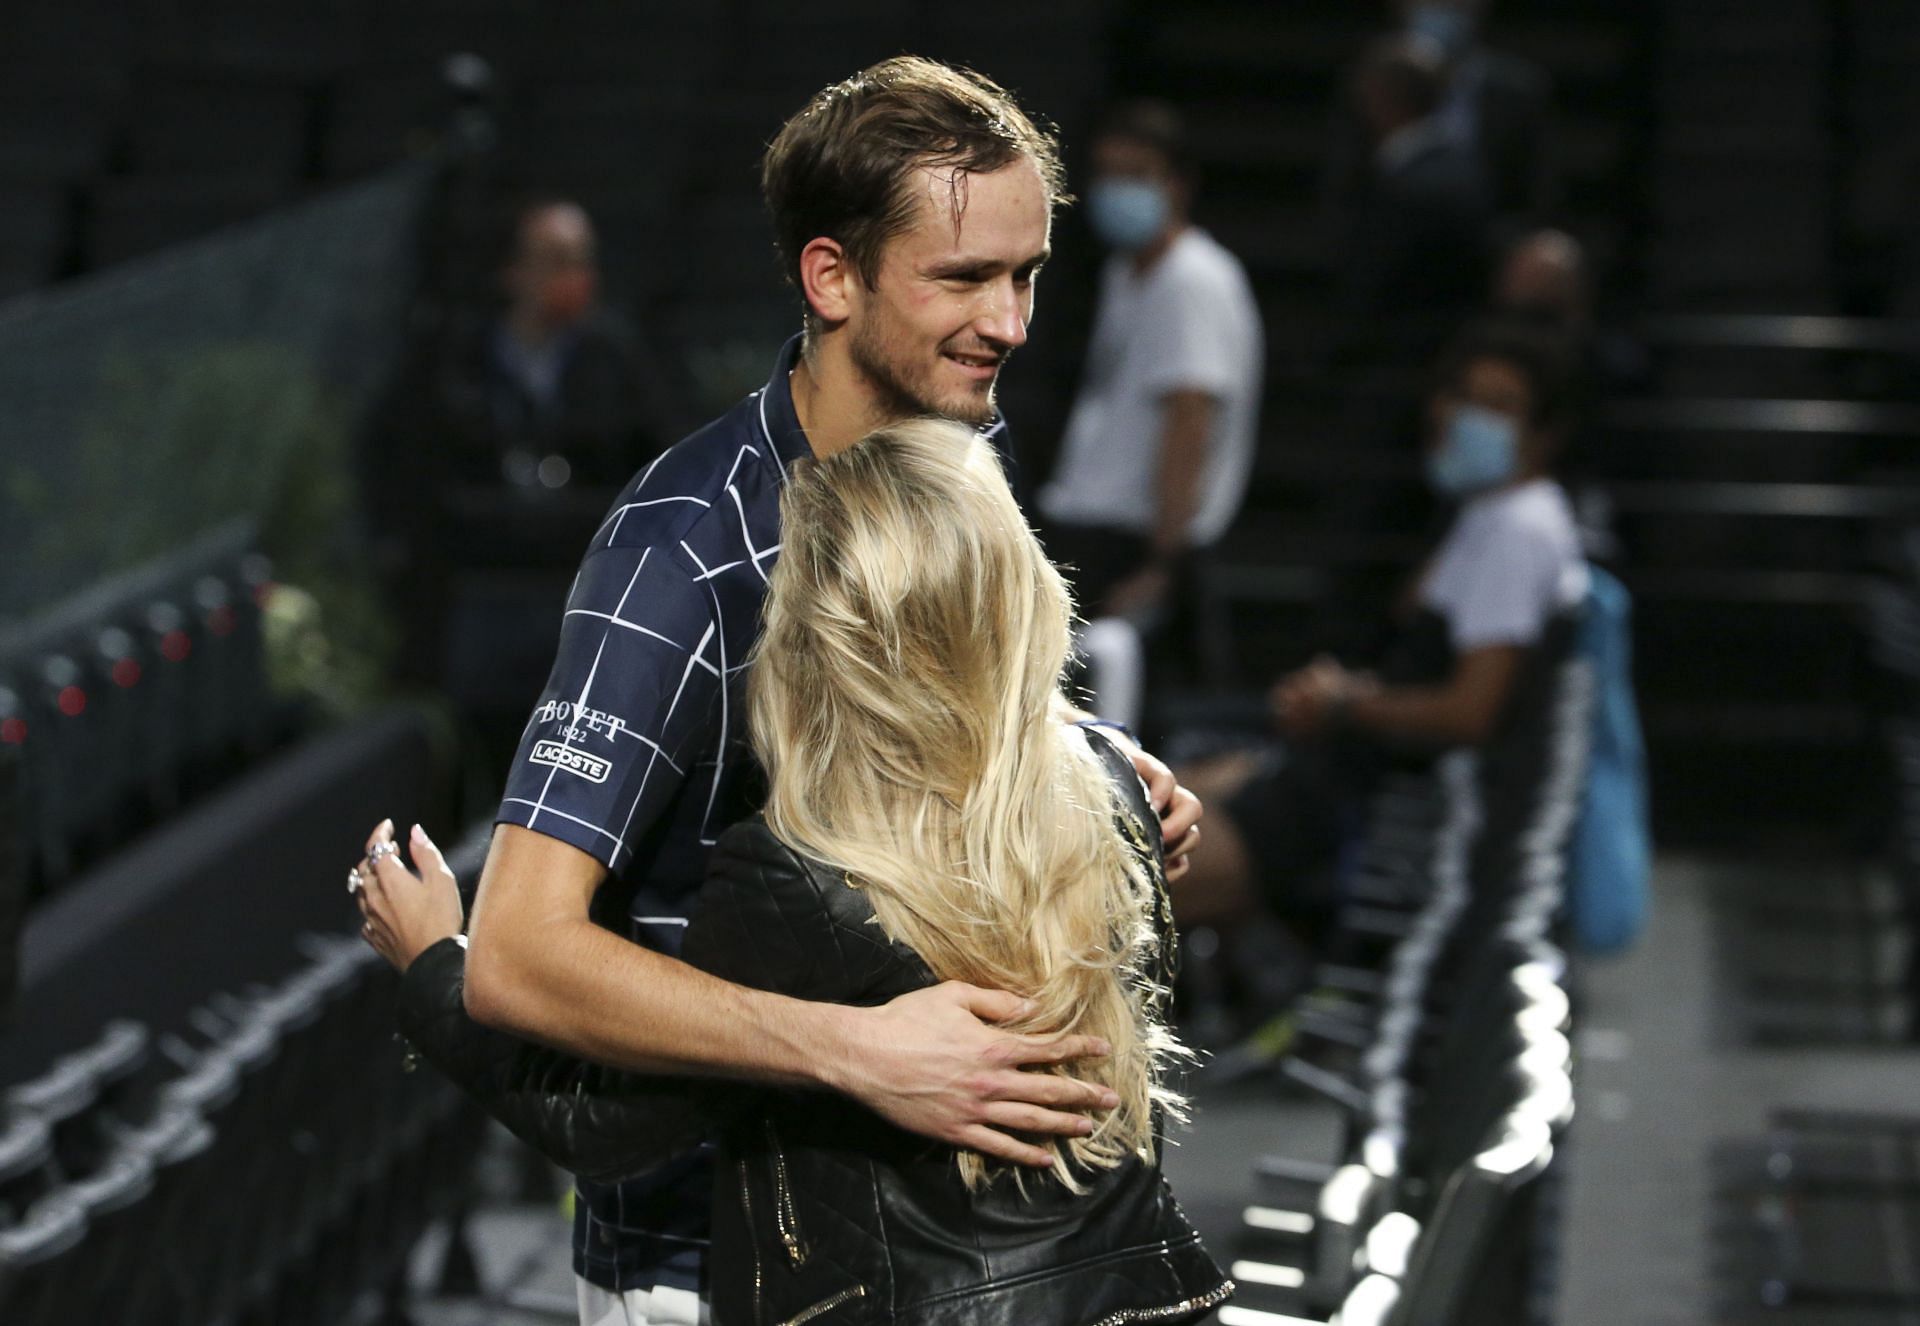 Daniil Medvedev pictured embracing his wife Daria at the 2020 Paris Masters.